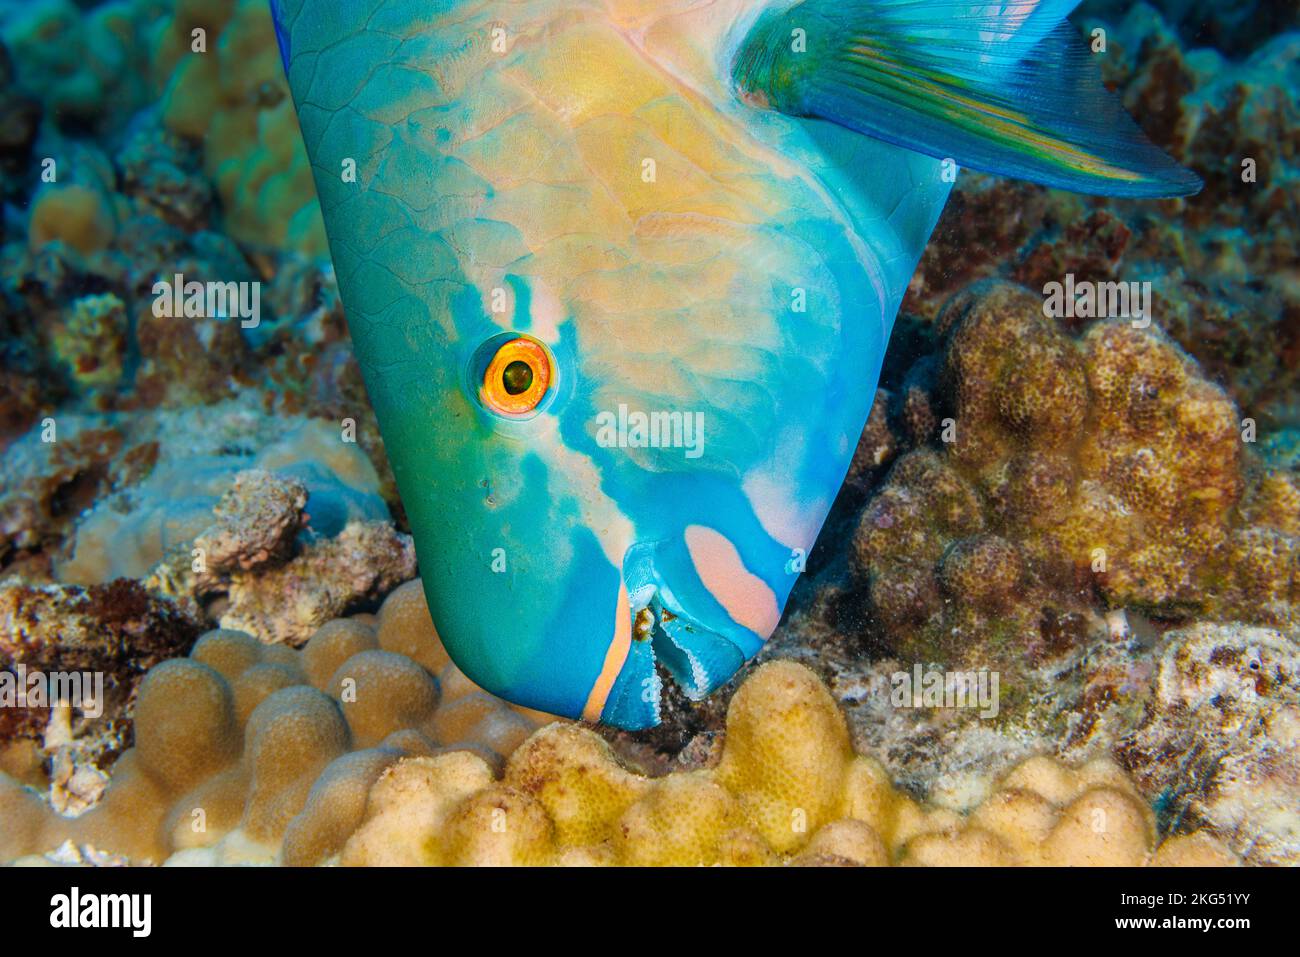 Questo pesce perla, Scarus rubraviolaceus, sta arrivando per un morso di corallo e alghe, Hawaii. Questa è la fase terminale o finale di un supermaschio e. Foto Stock